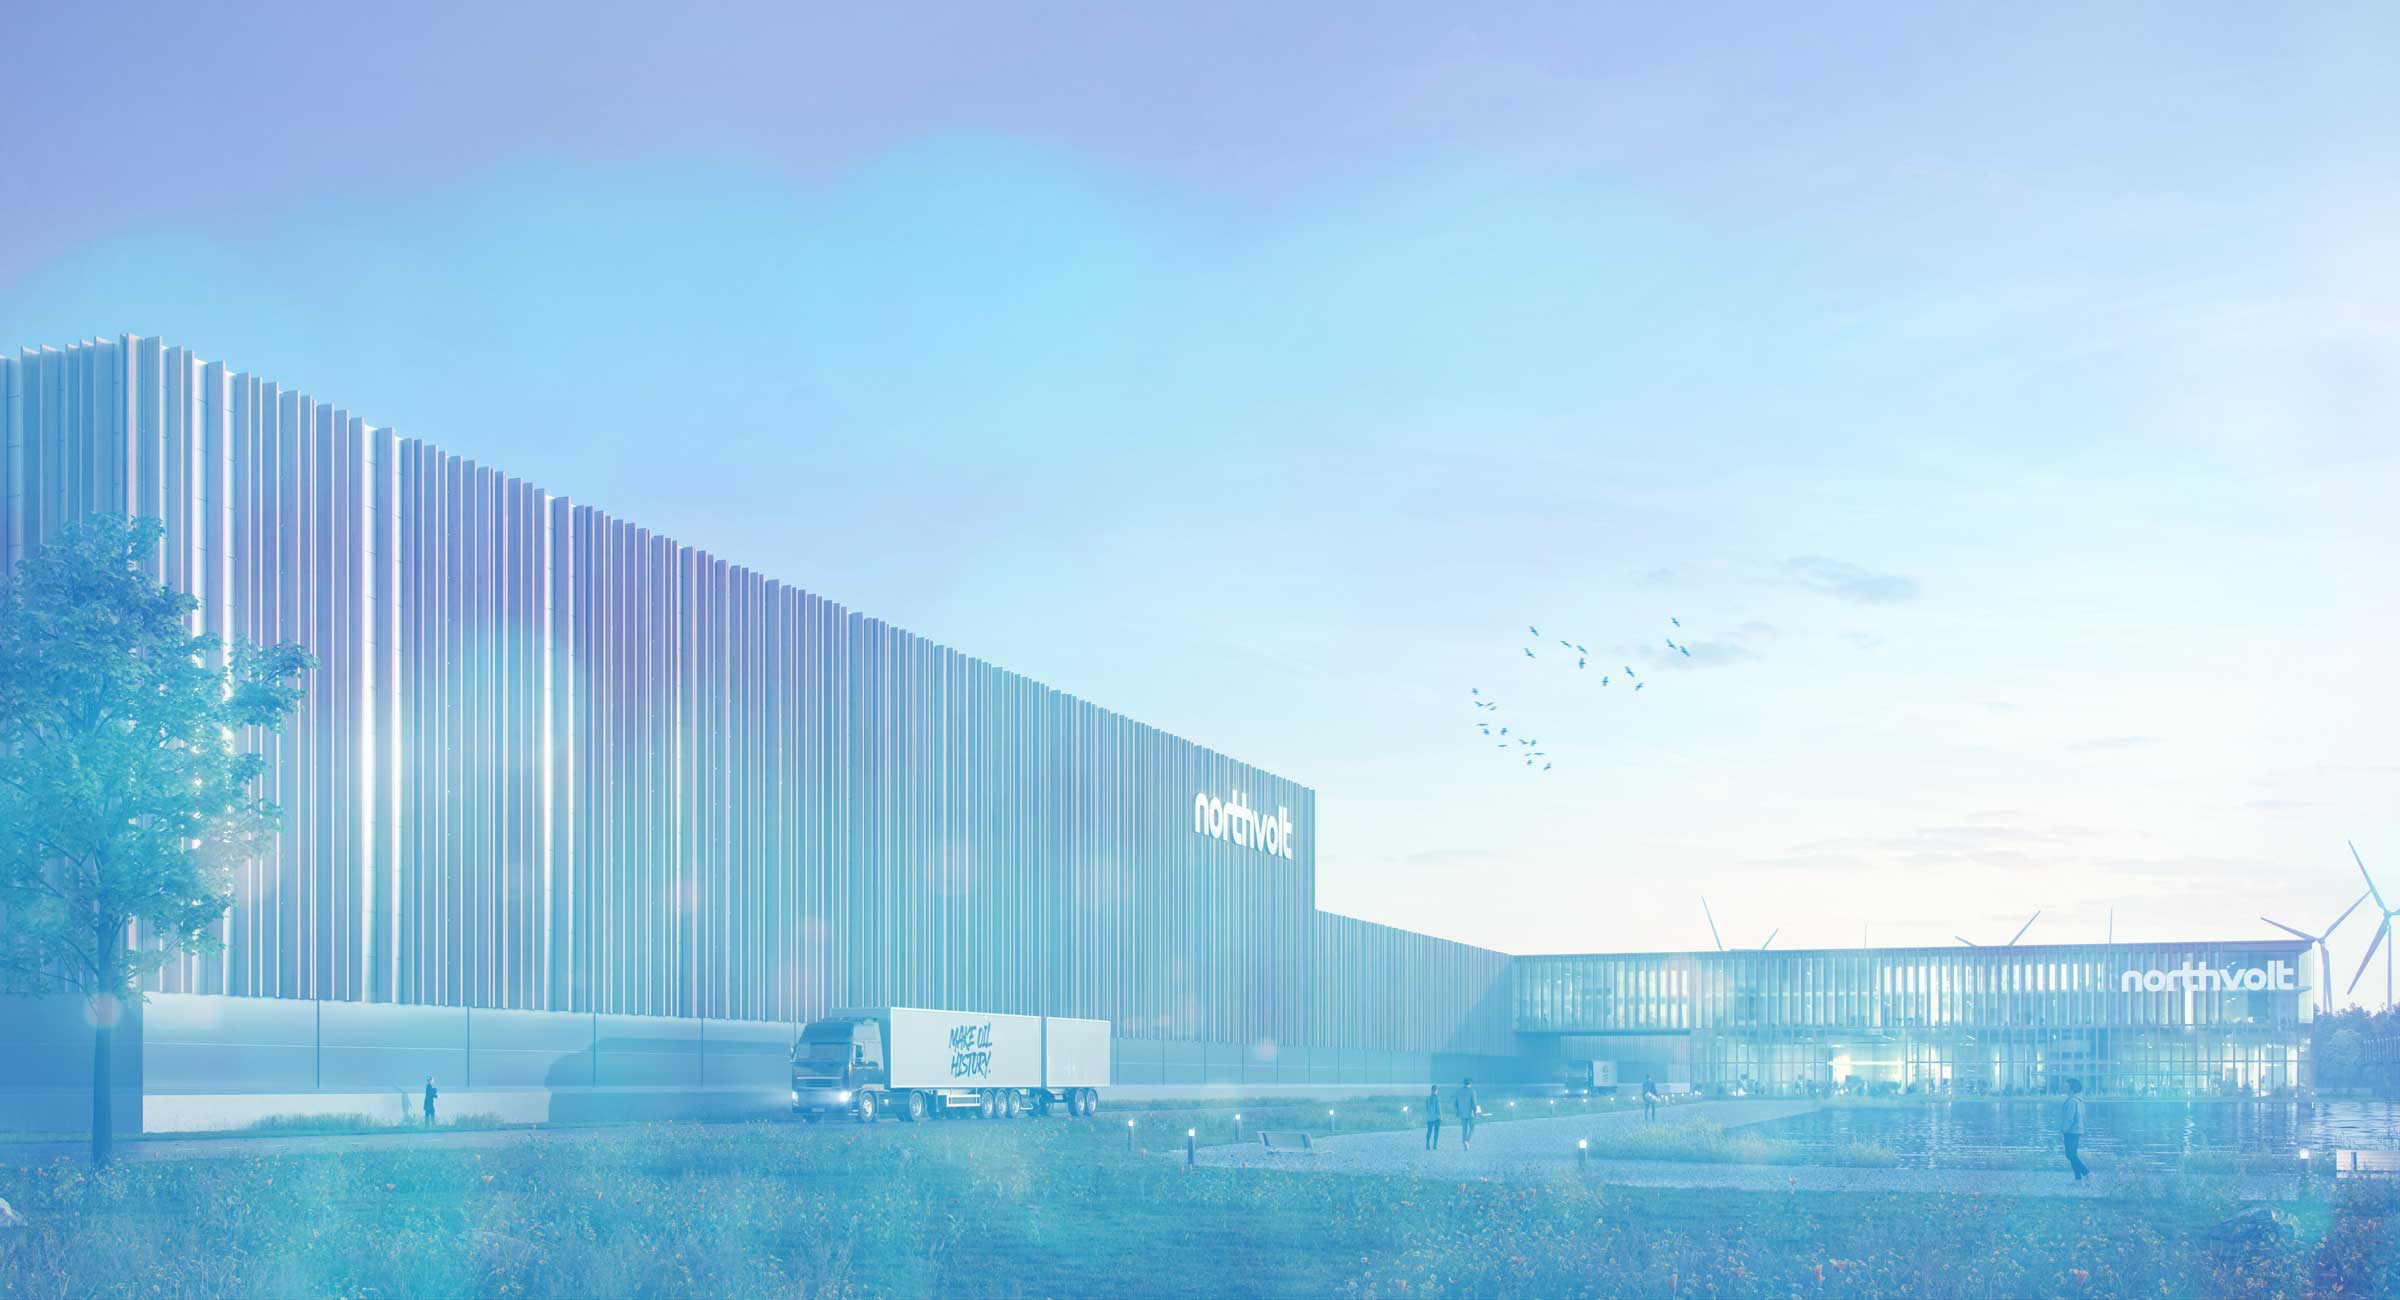 Modellbild eines Fabrikgebäudes der schwedischen Firma northvolt. Die Gebäudeanmutung ist sehr modern mit Holzstreben und Glaselementen.